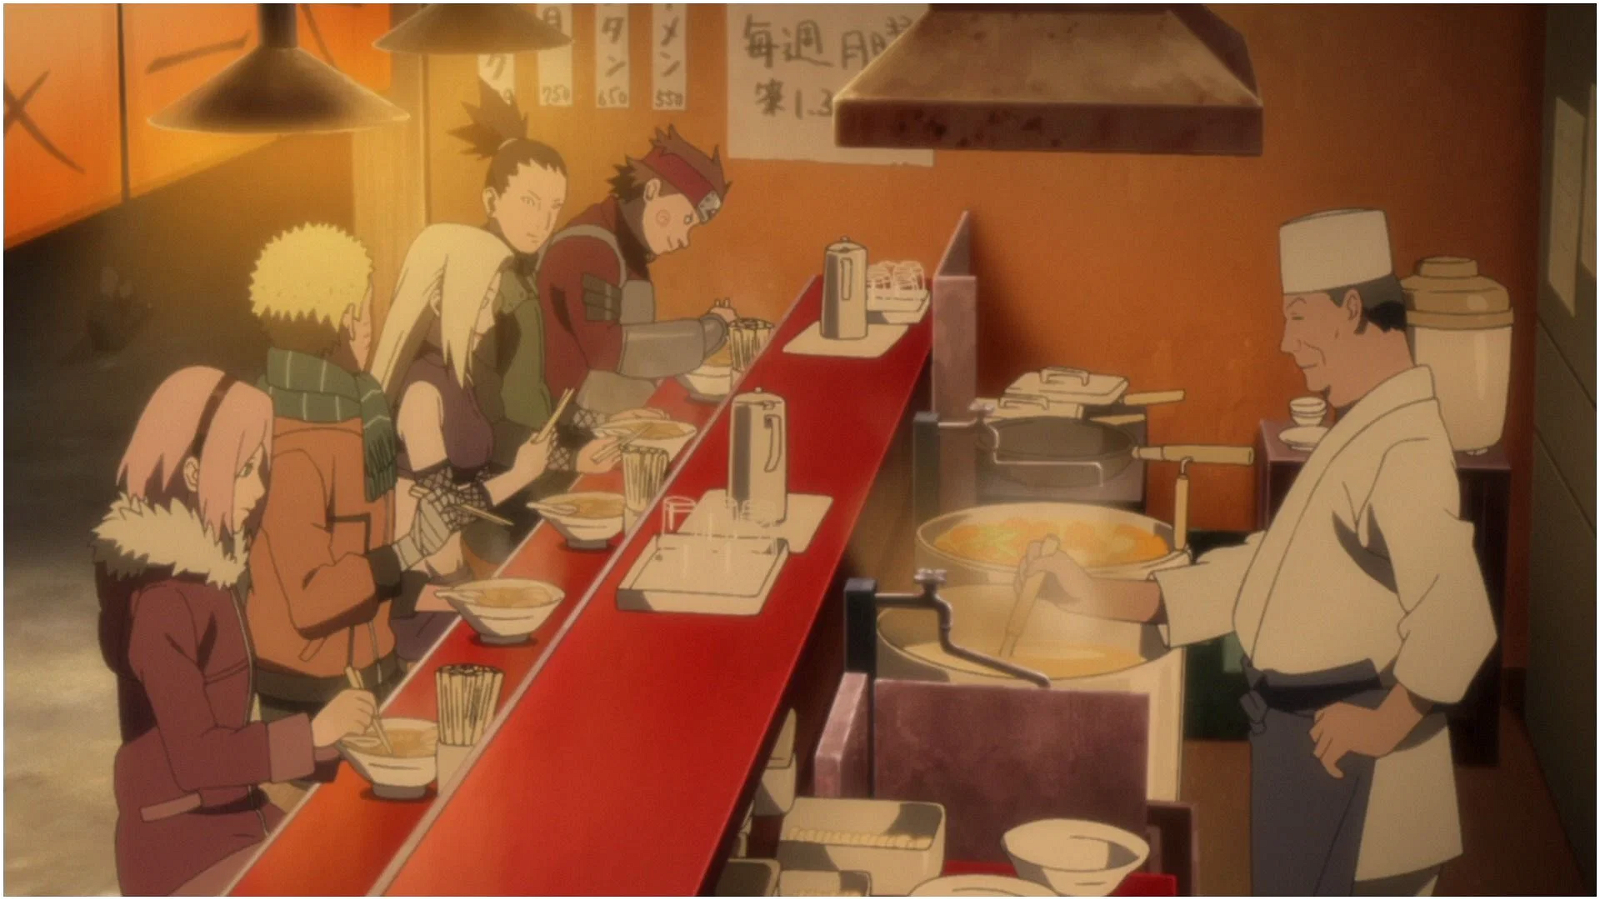 Naruto and his friends at Ichiraku Ramen (Credit: Studio Pierrot)